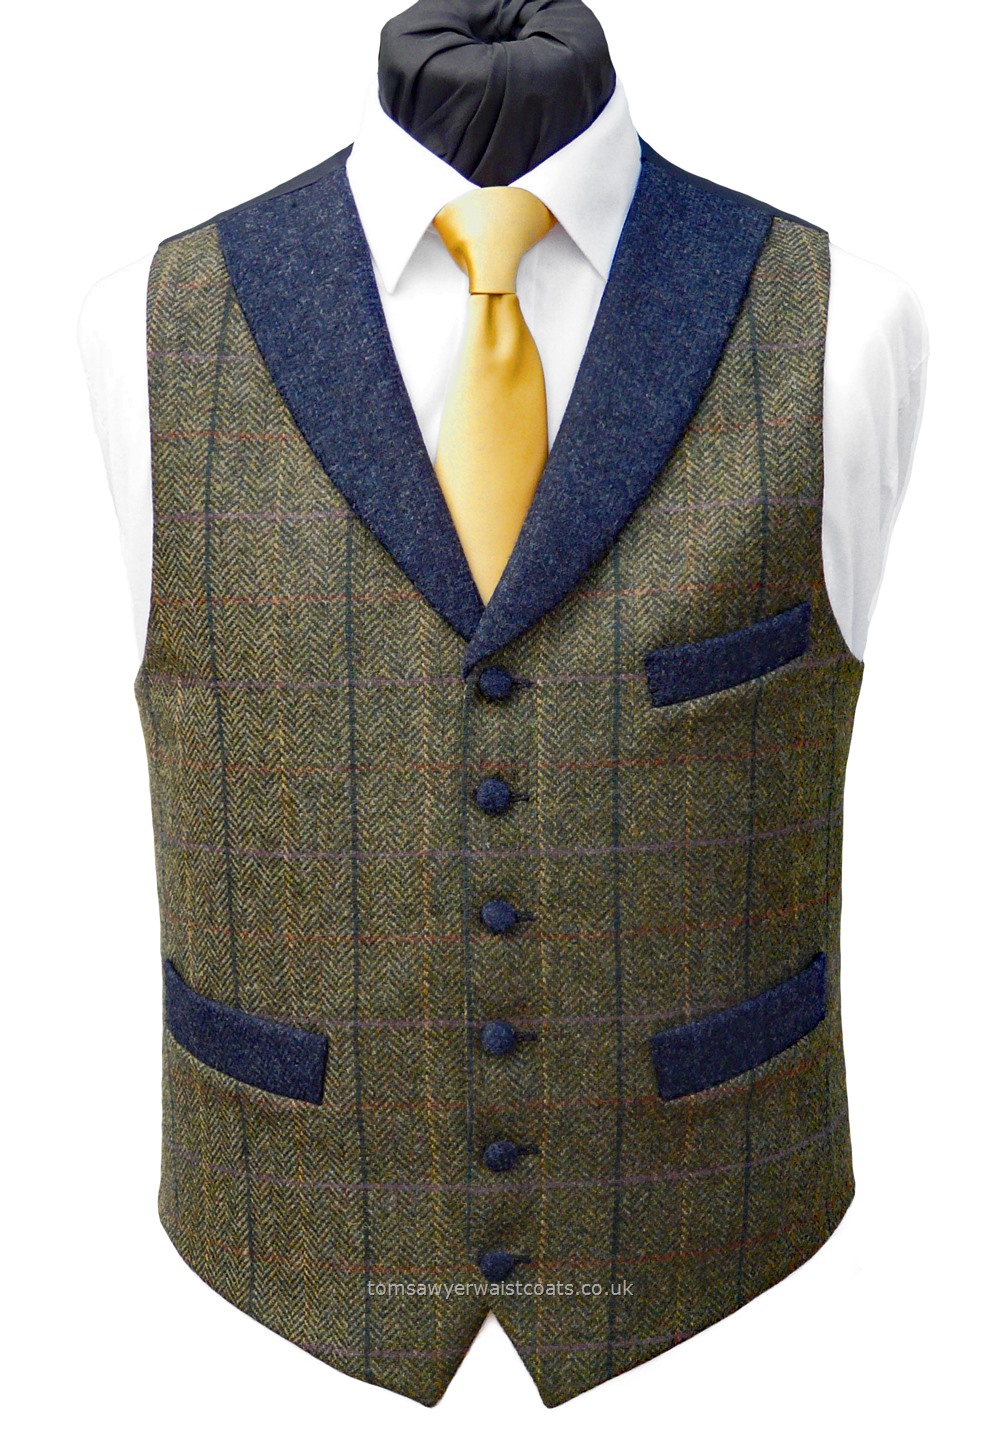 Traditional Waistcoats : Informal Waistcoats & Gentleman's Waistcoats : Winchester Green Tweed Waistcoat With Blue Shawl Collar